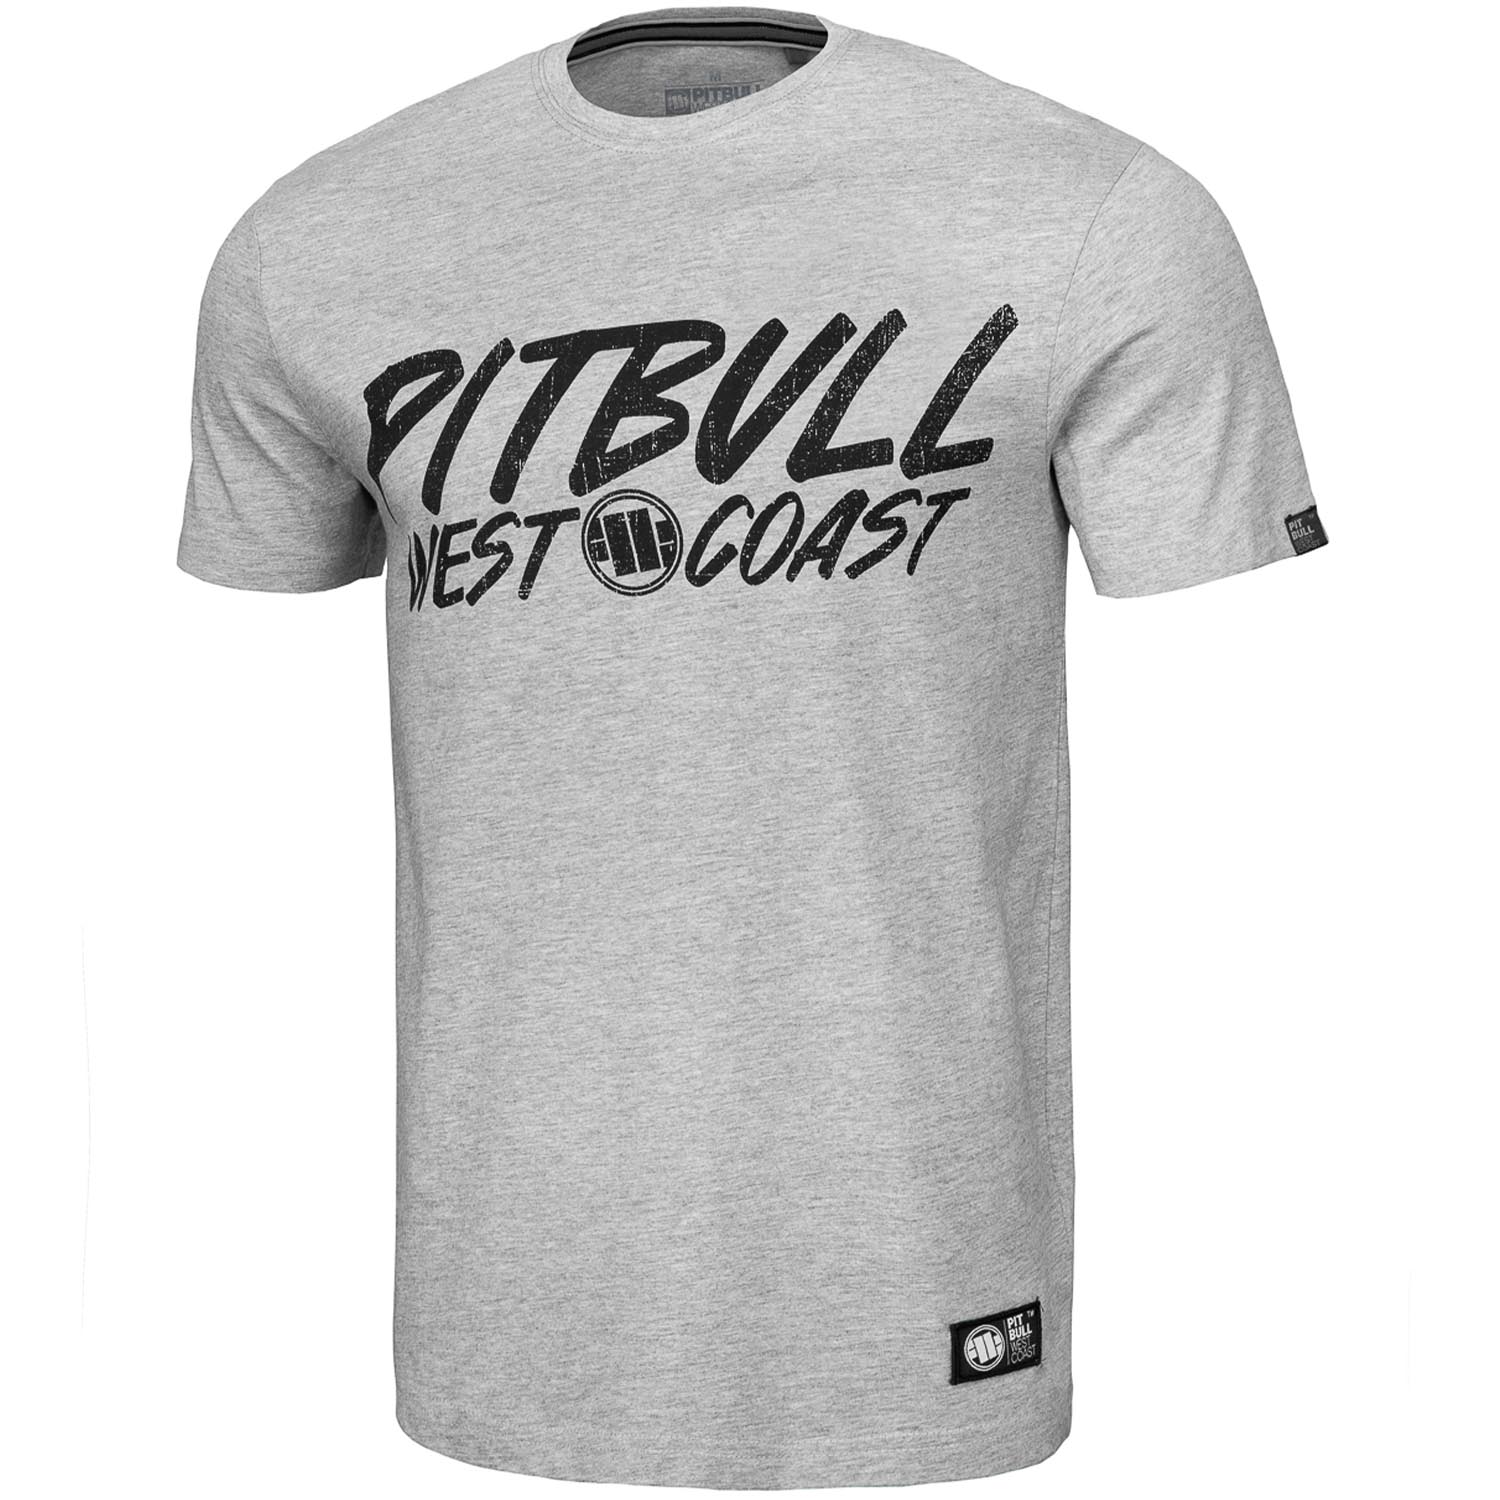 Pit Bull West Coast T-Shirt, Grey Dog, grau